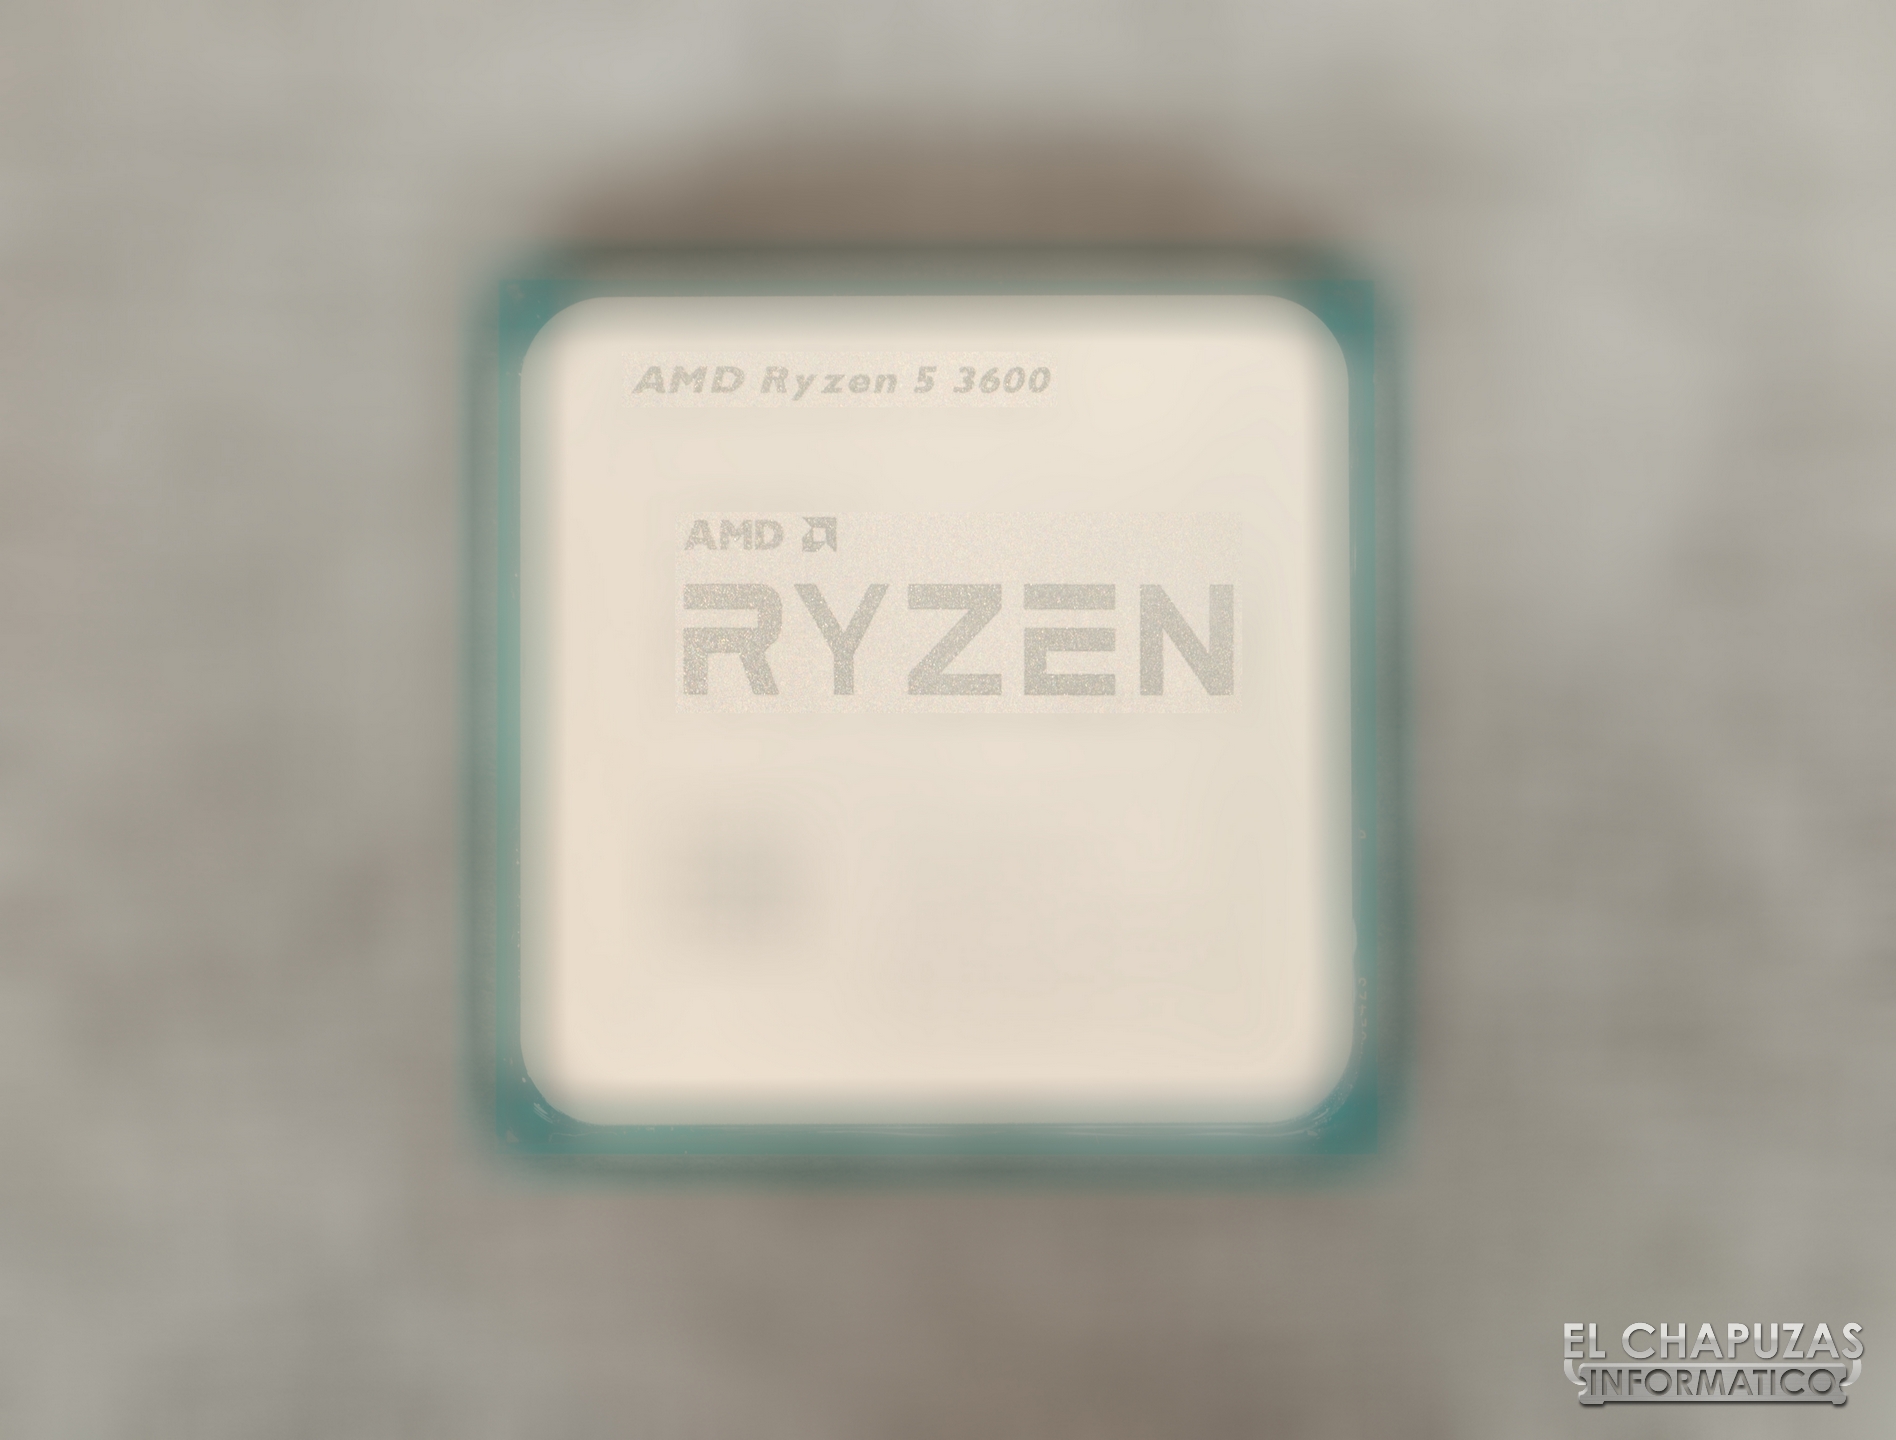 Immagine pubblicata in relazione al seguente contenuto: La CPU Ryzen 5 3600 potrebbe avere prestazioni simili a quelle del Ryzen 7 2700X | Nome immagine: news29723_AMD-Ryzen-5-3600_2.jpg